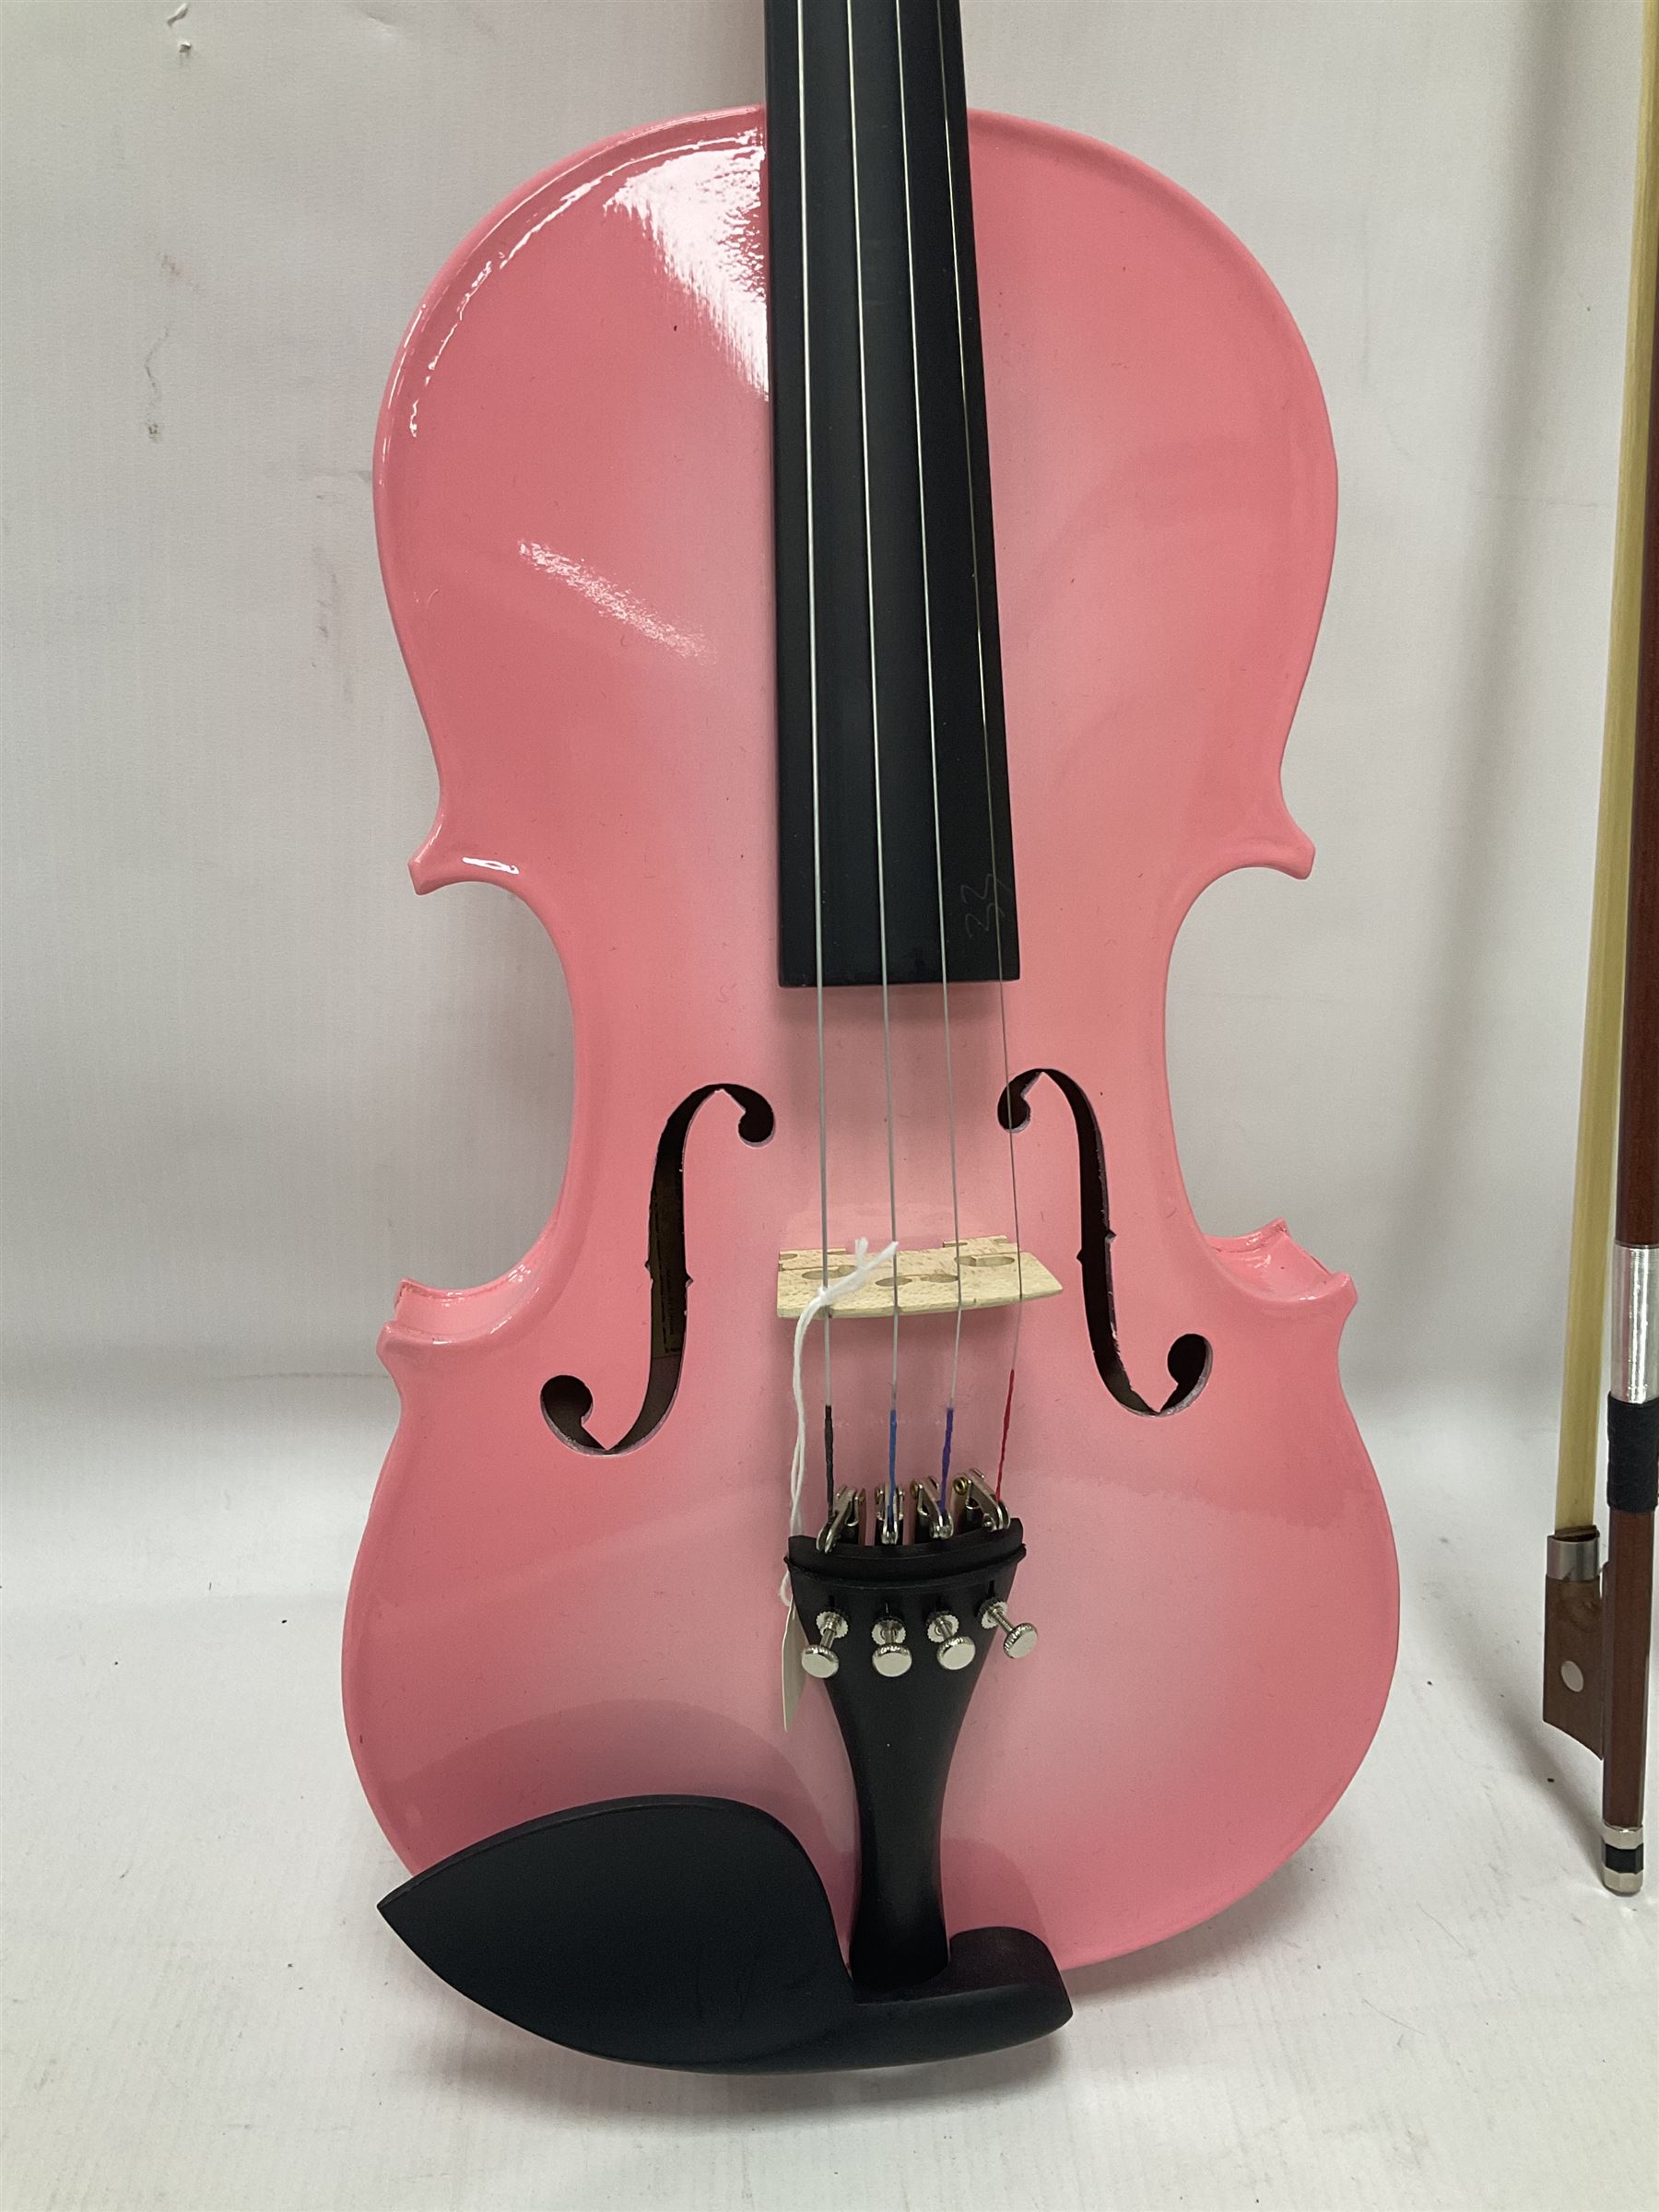 Zest full size pink violin - Image 5 of 32